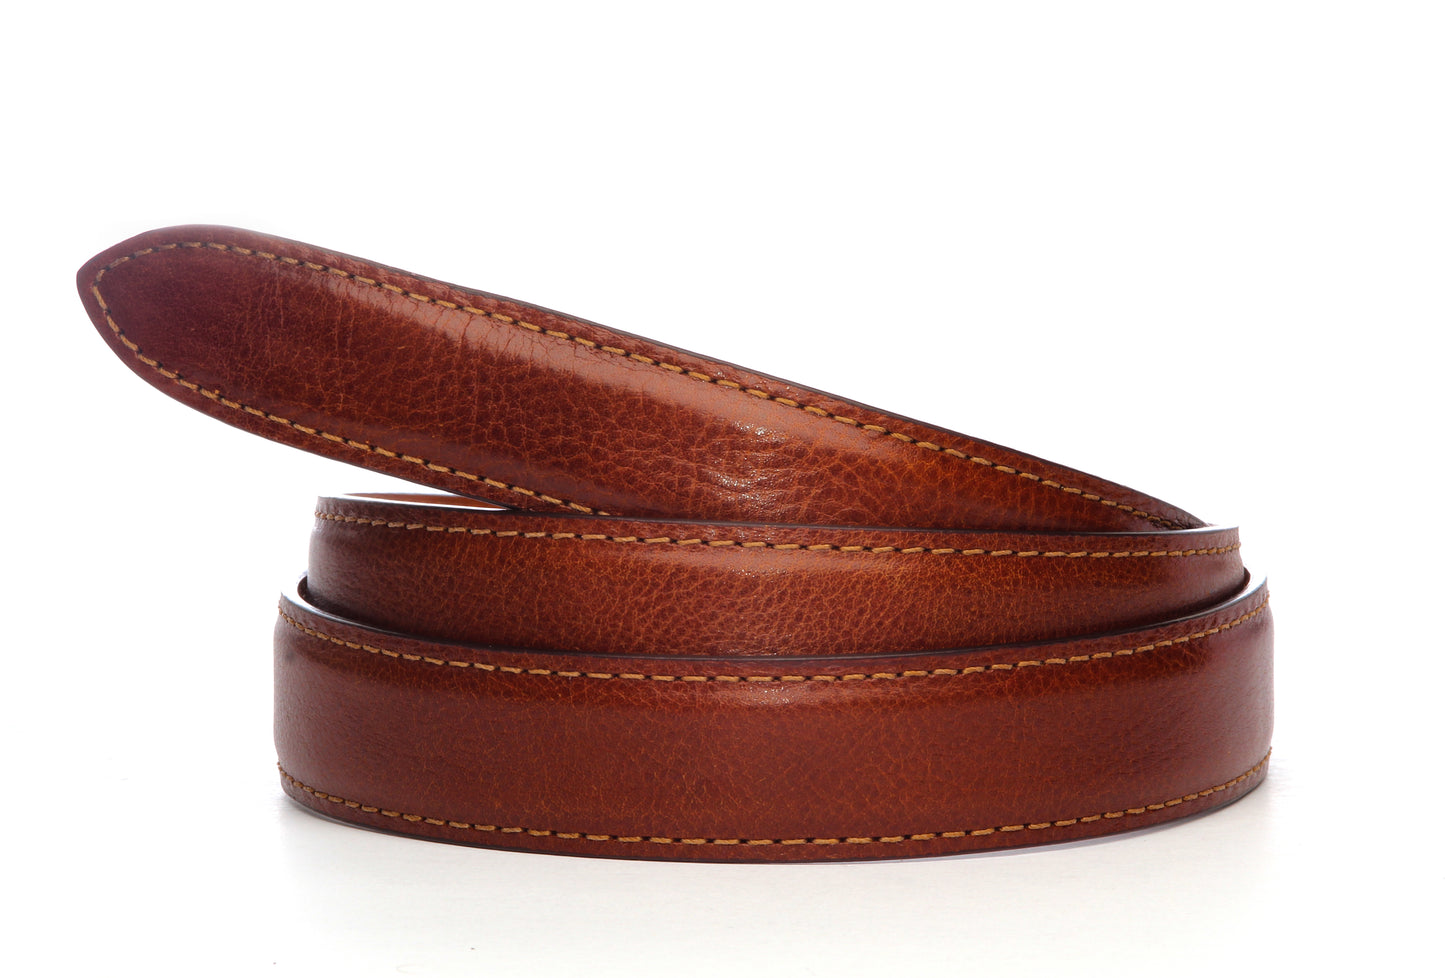 Men's Italian calfskin belt strap in cognac with a 1.25-inch width, formal look, full roll